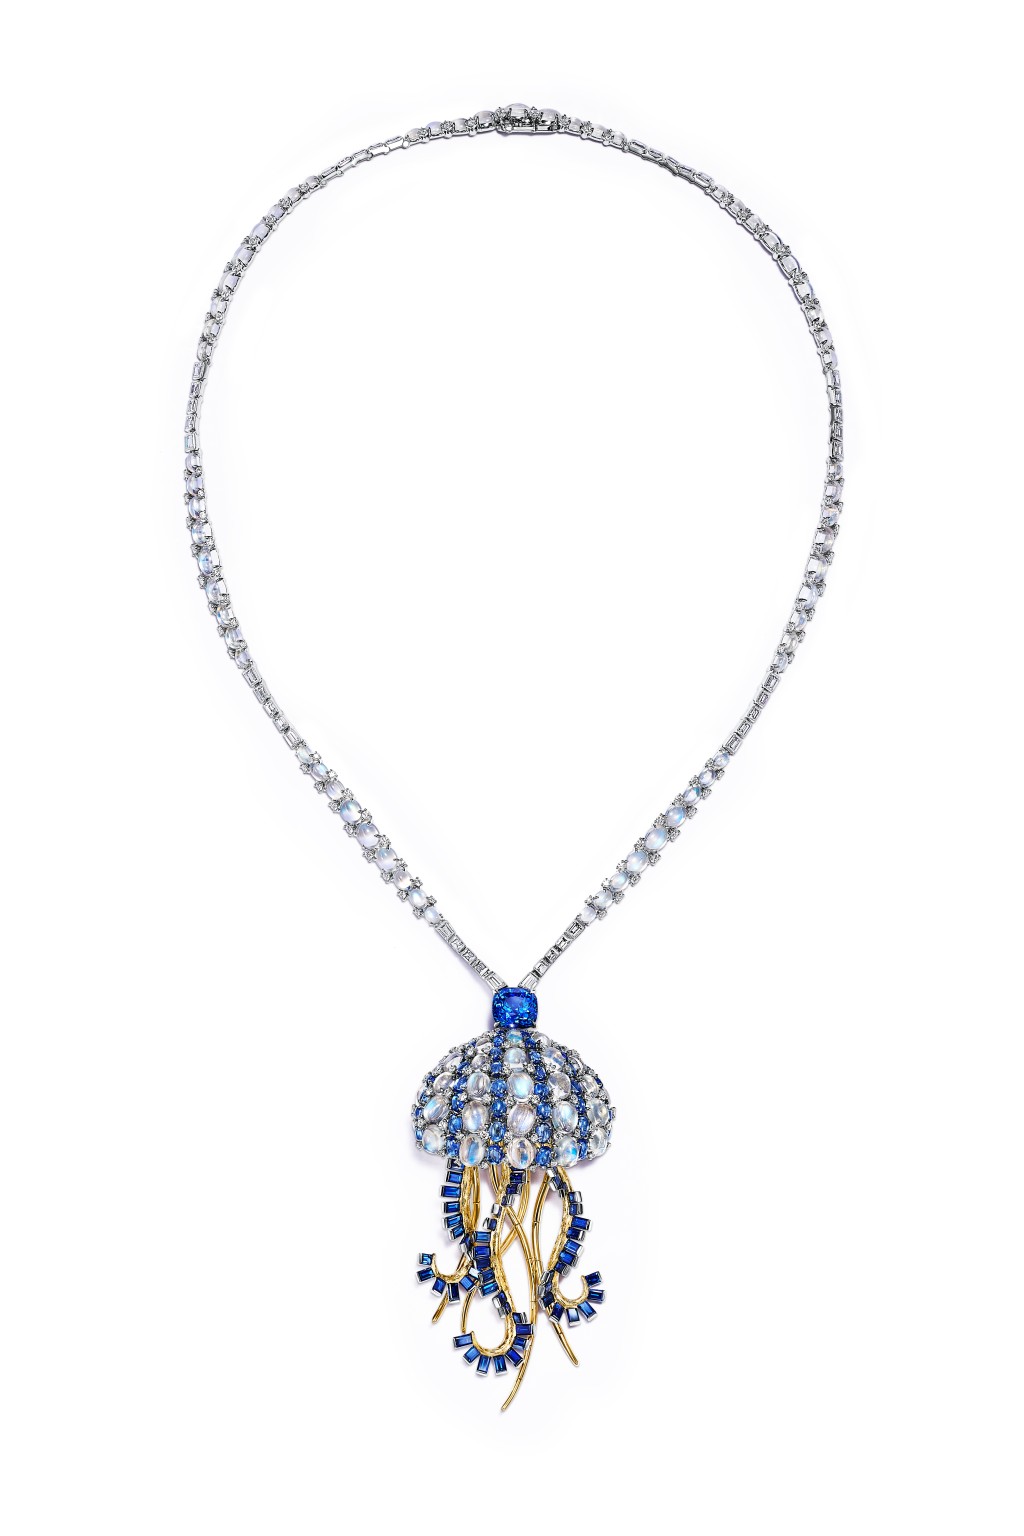 水母绮梦（Jellyfish）主题铂金及18K黄金钻石项链，镶嵌未经优化处理蓝宝石、蓝宝石、坦桑石及月亮石。